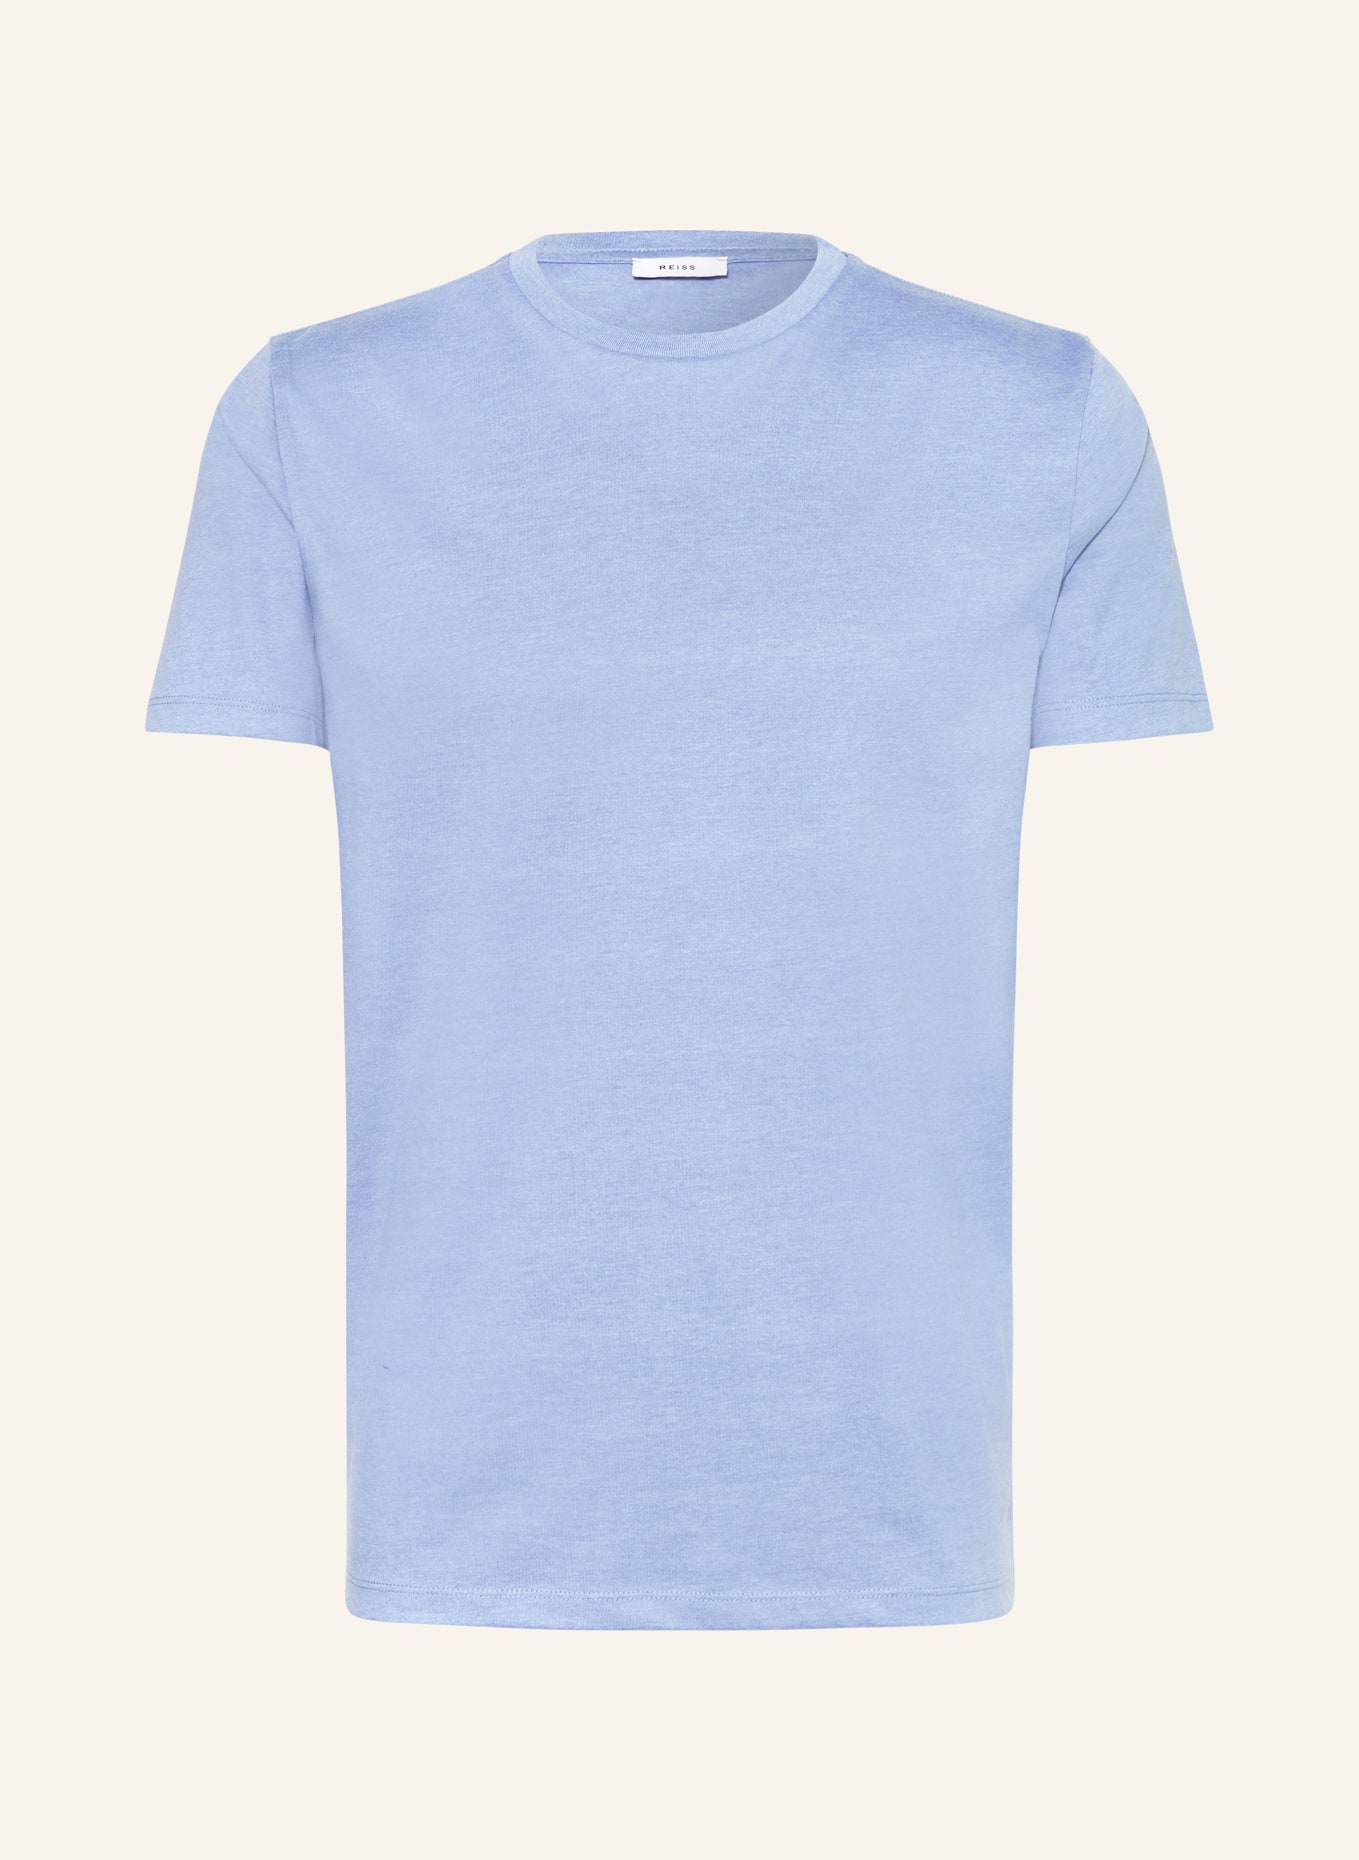 REISS T-Shirt BLESS, Farbe: BLAU (Bild 1)